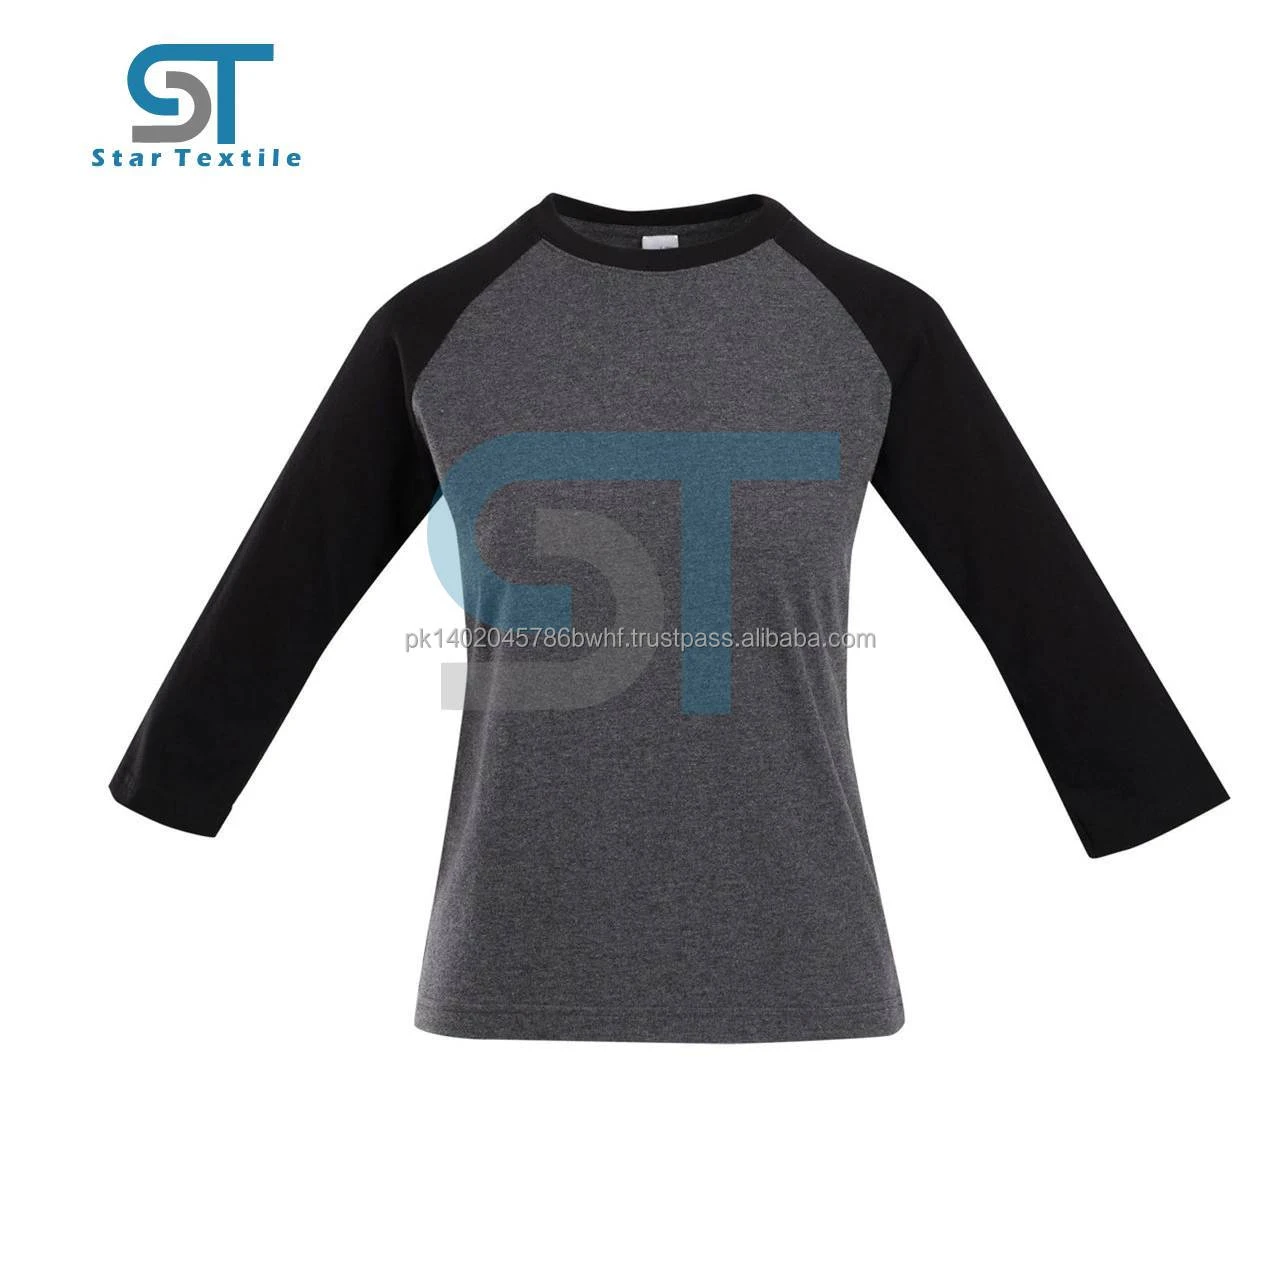 Unisex Tri-Blend 34 Sleeve Raglan Tshirt / baseball shirt two color tone shirt